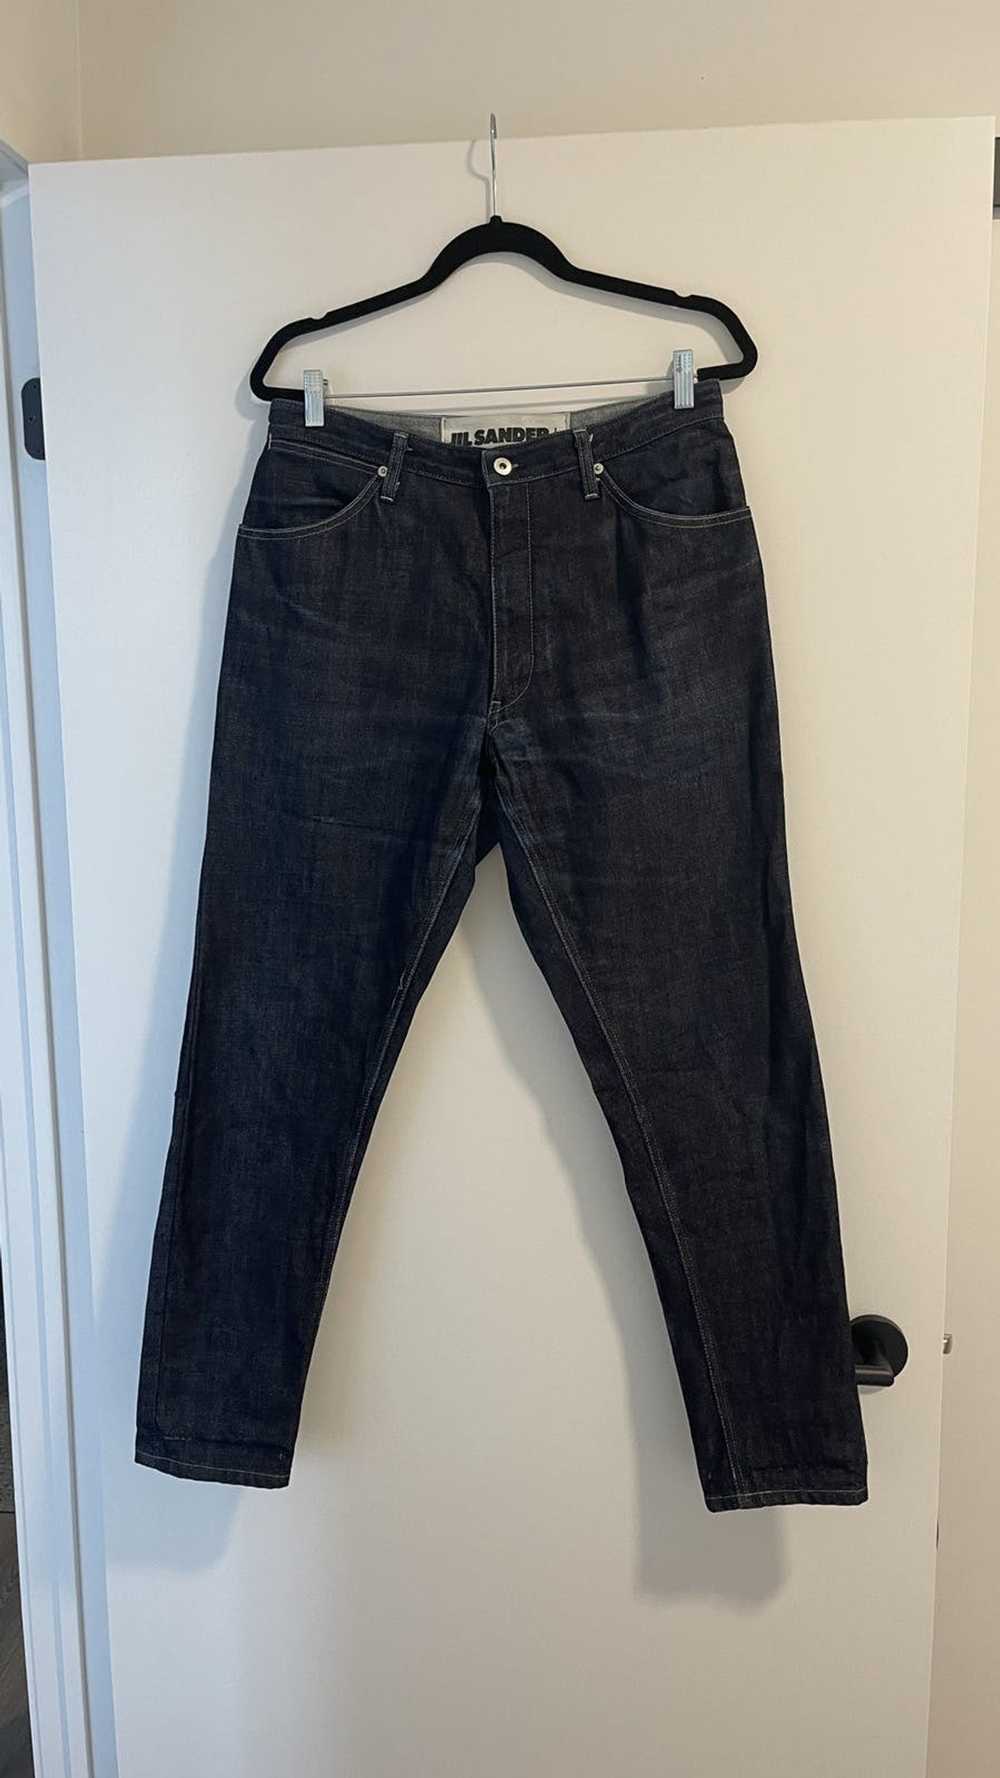 Jil Sander JIL SANDER Japanese Denim Jeans - image 1